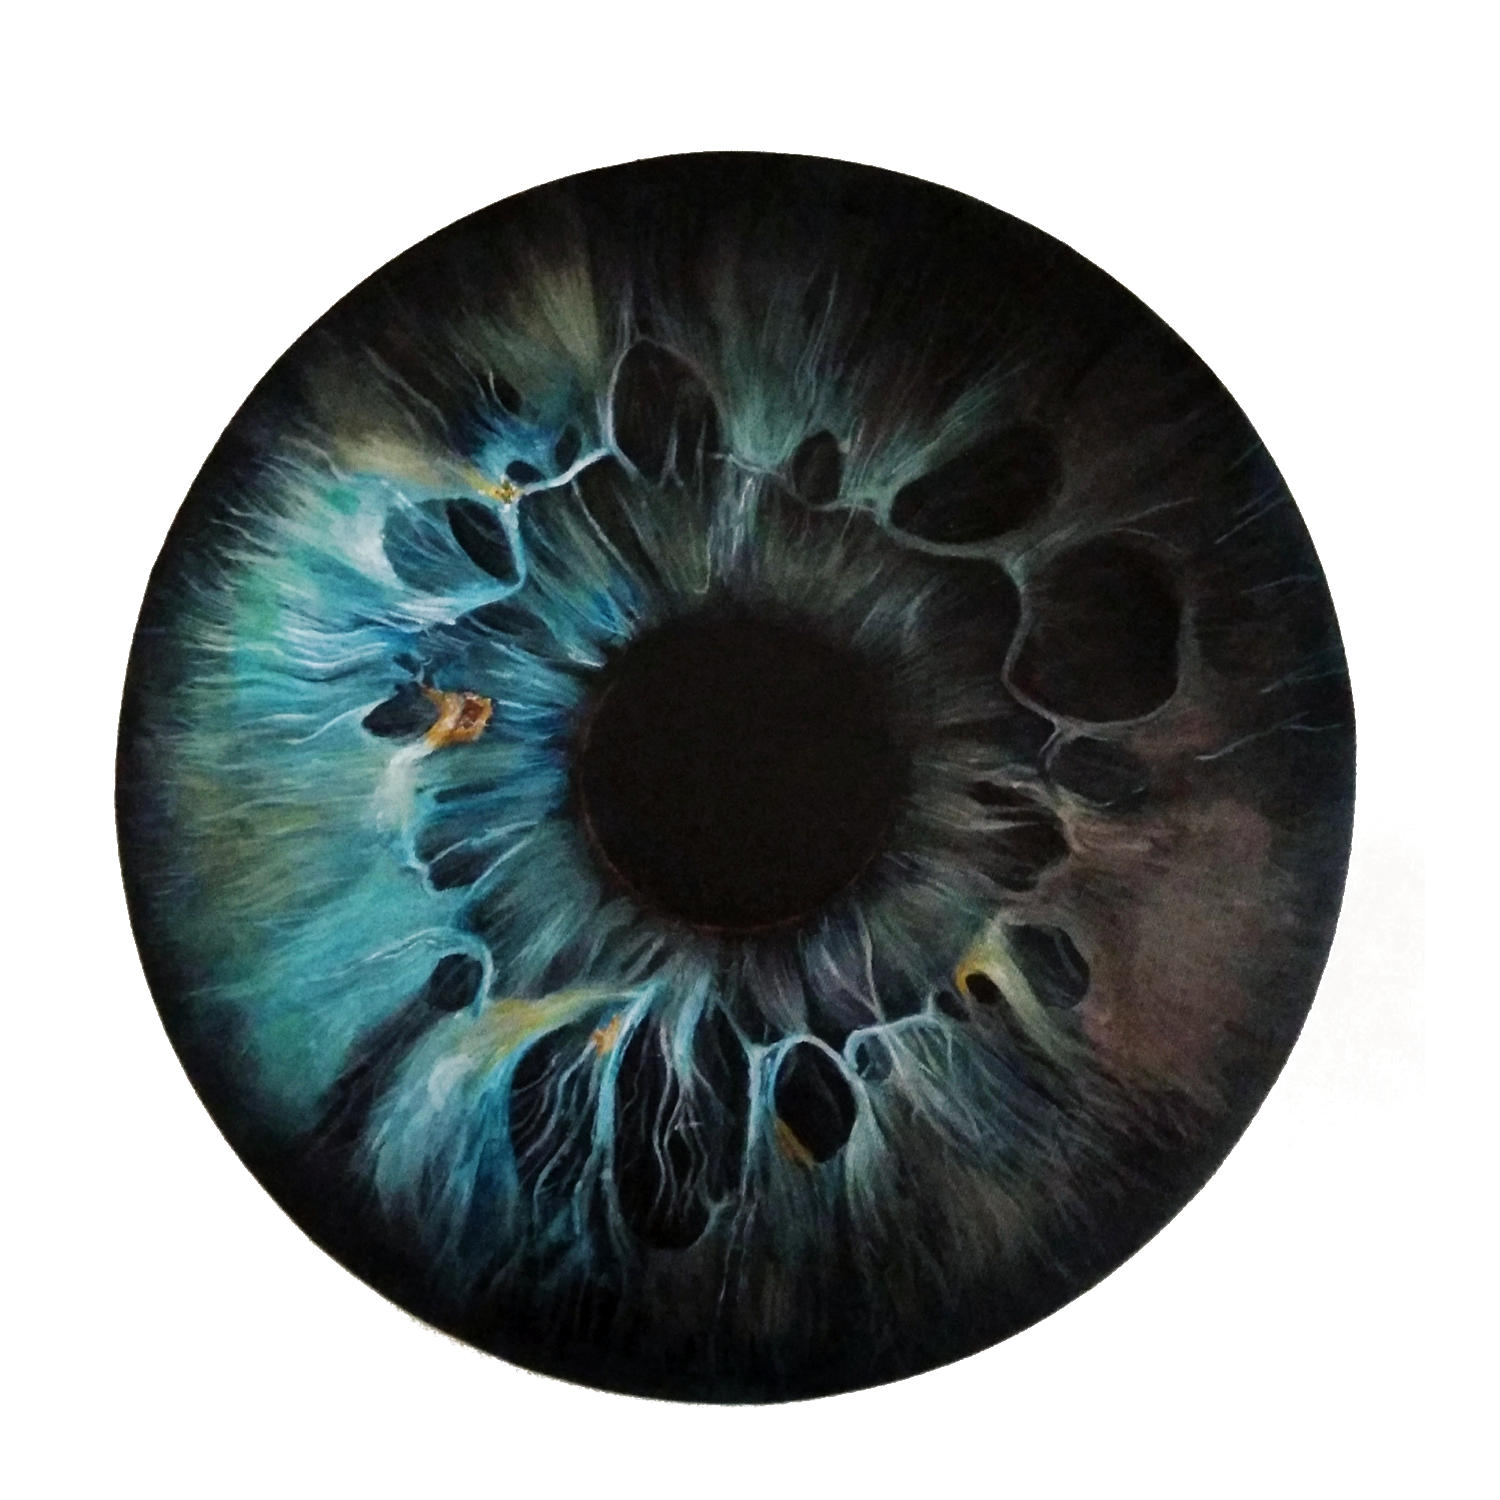 blue eye iris